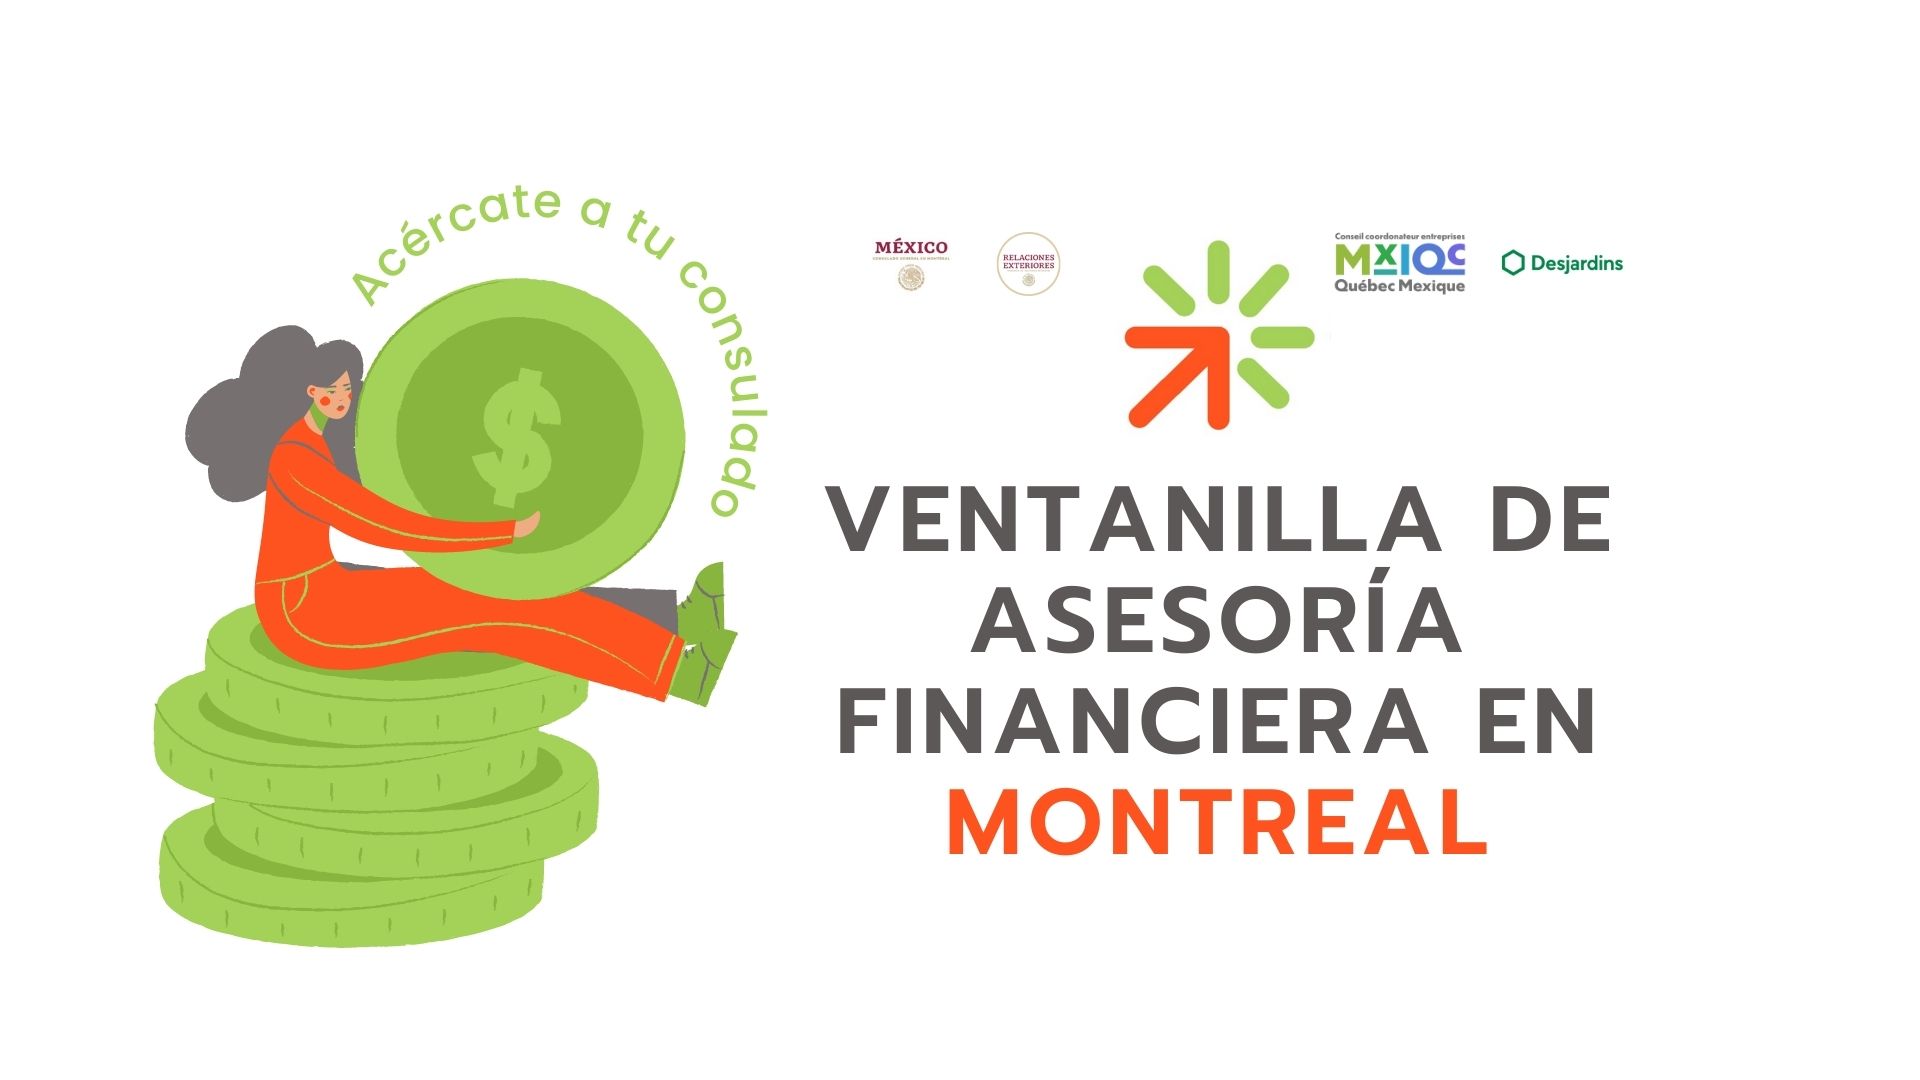 Ventanilla de Asesoría financiera en Montreal, en colaboración con el Consejo Coordinador Empresarial México-Quebec